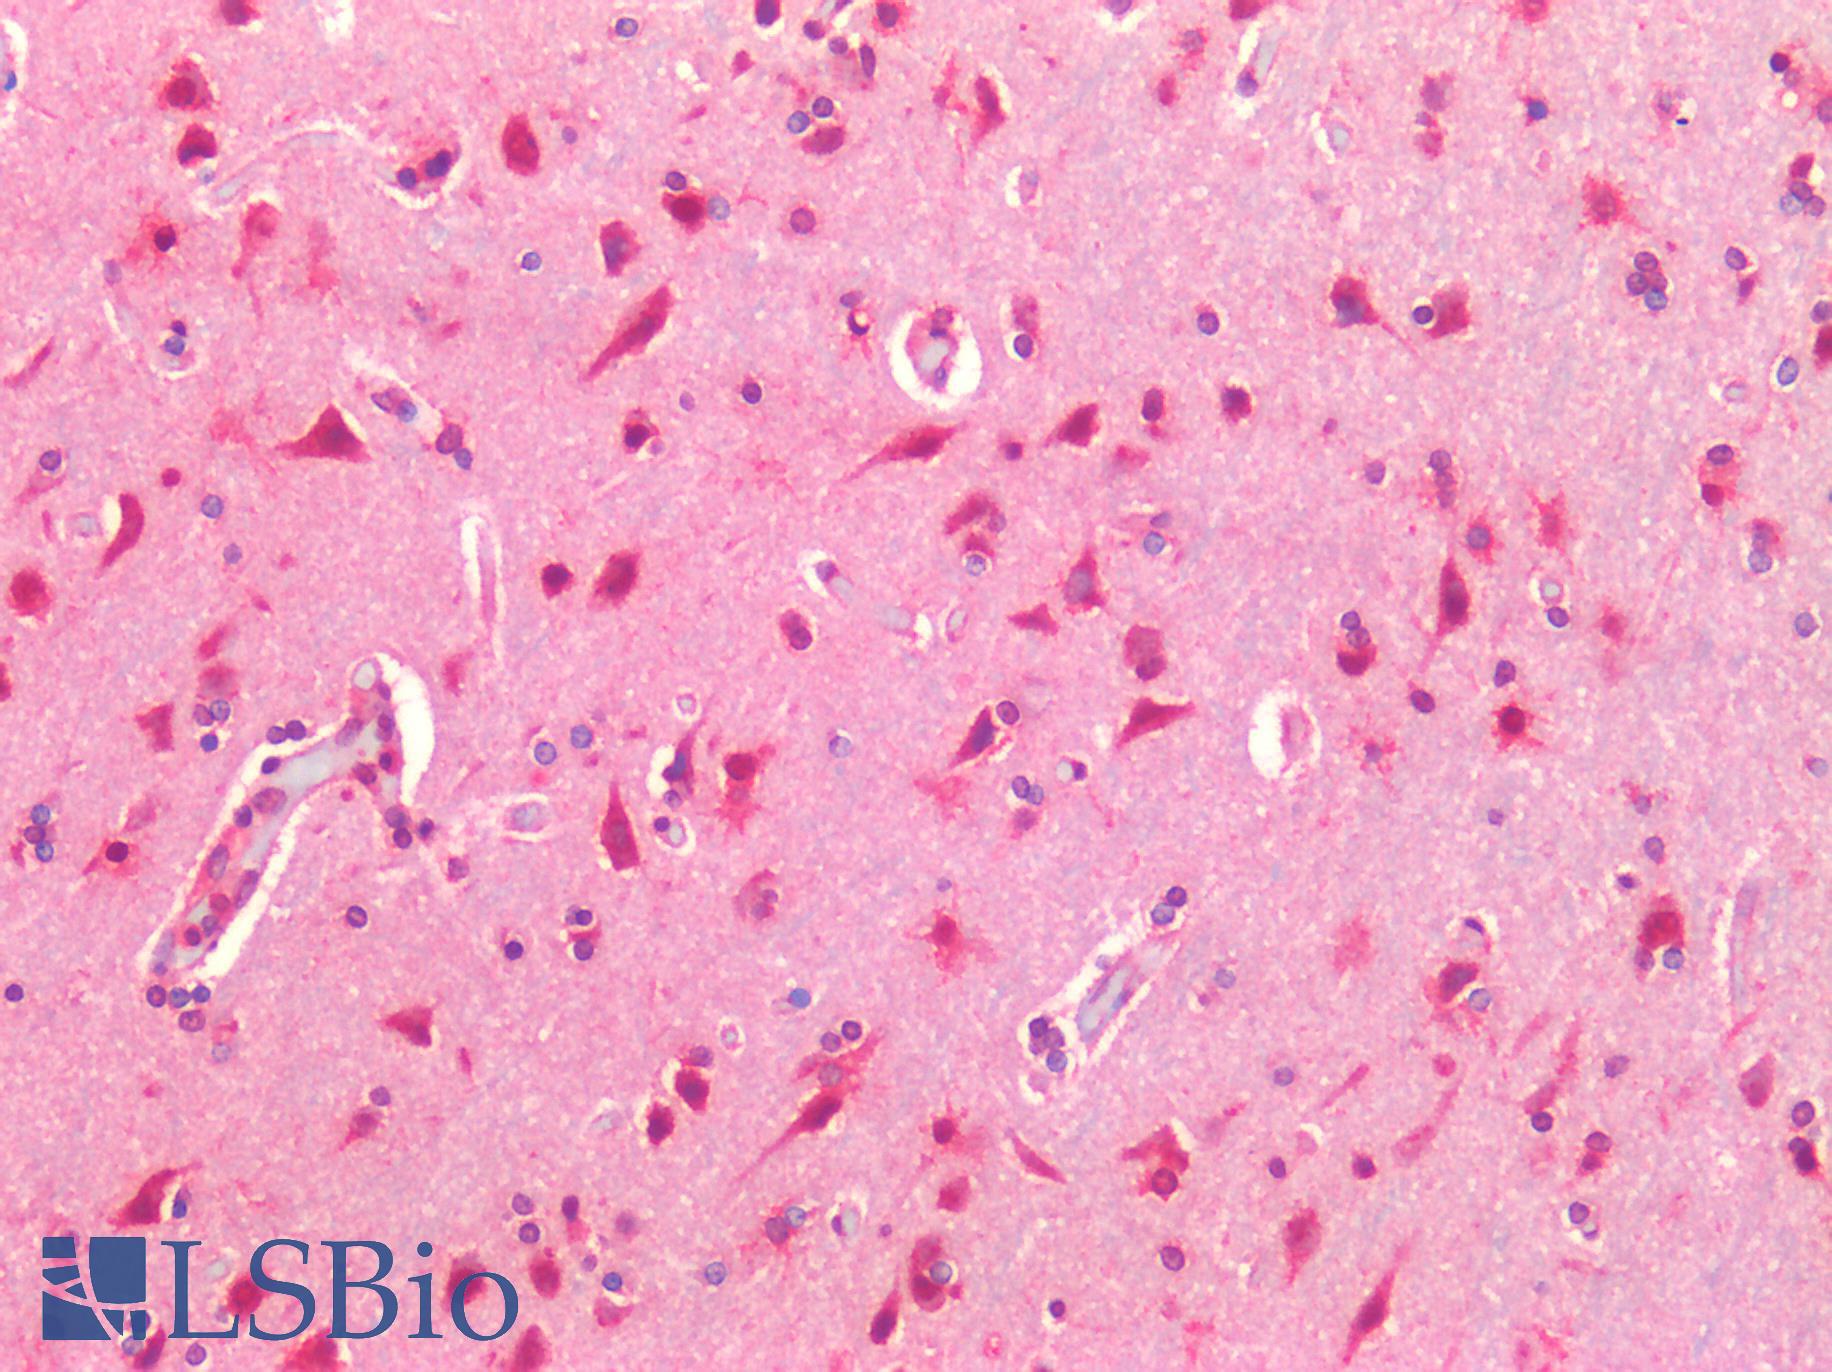 TM9SF4 Antibody - Human Brain, Cortex: Formalin-Fixed, Paraffin-Embedded (FFPE)